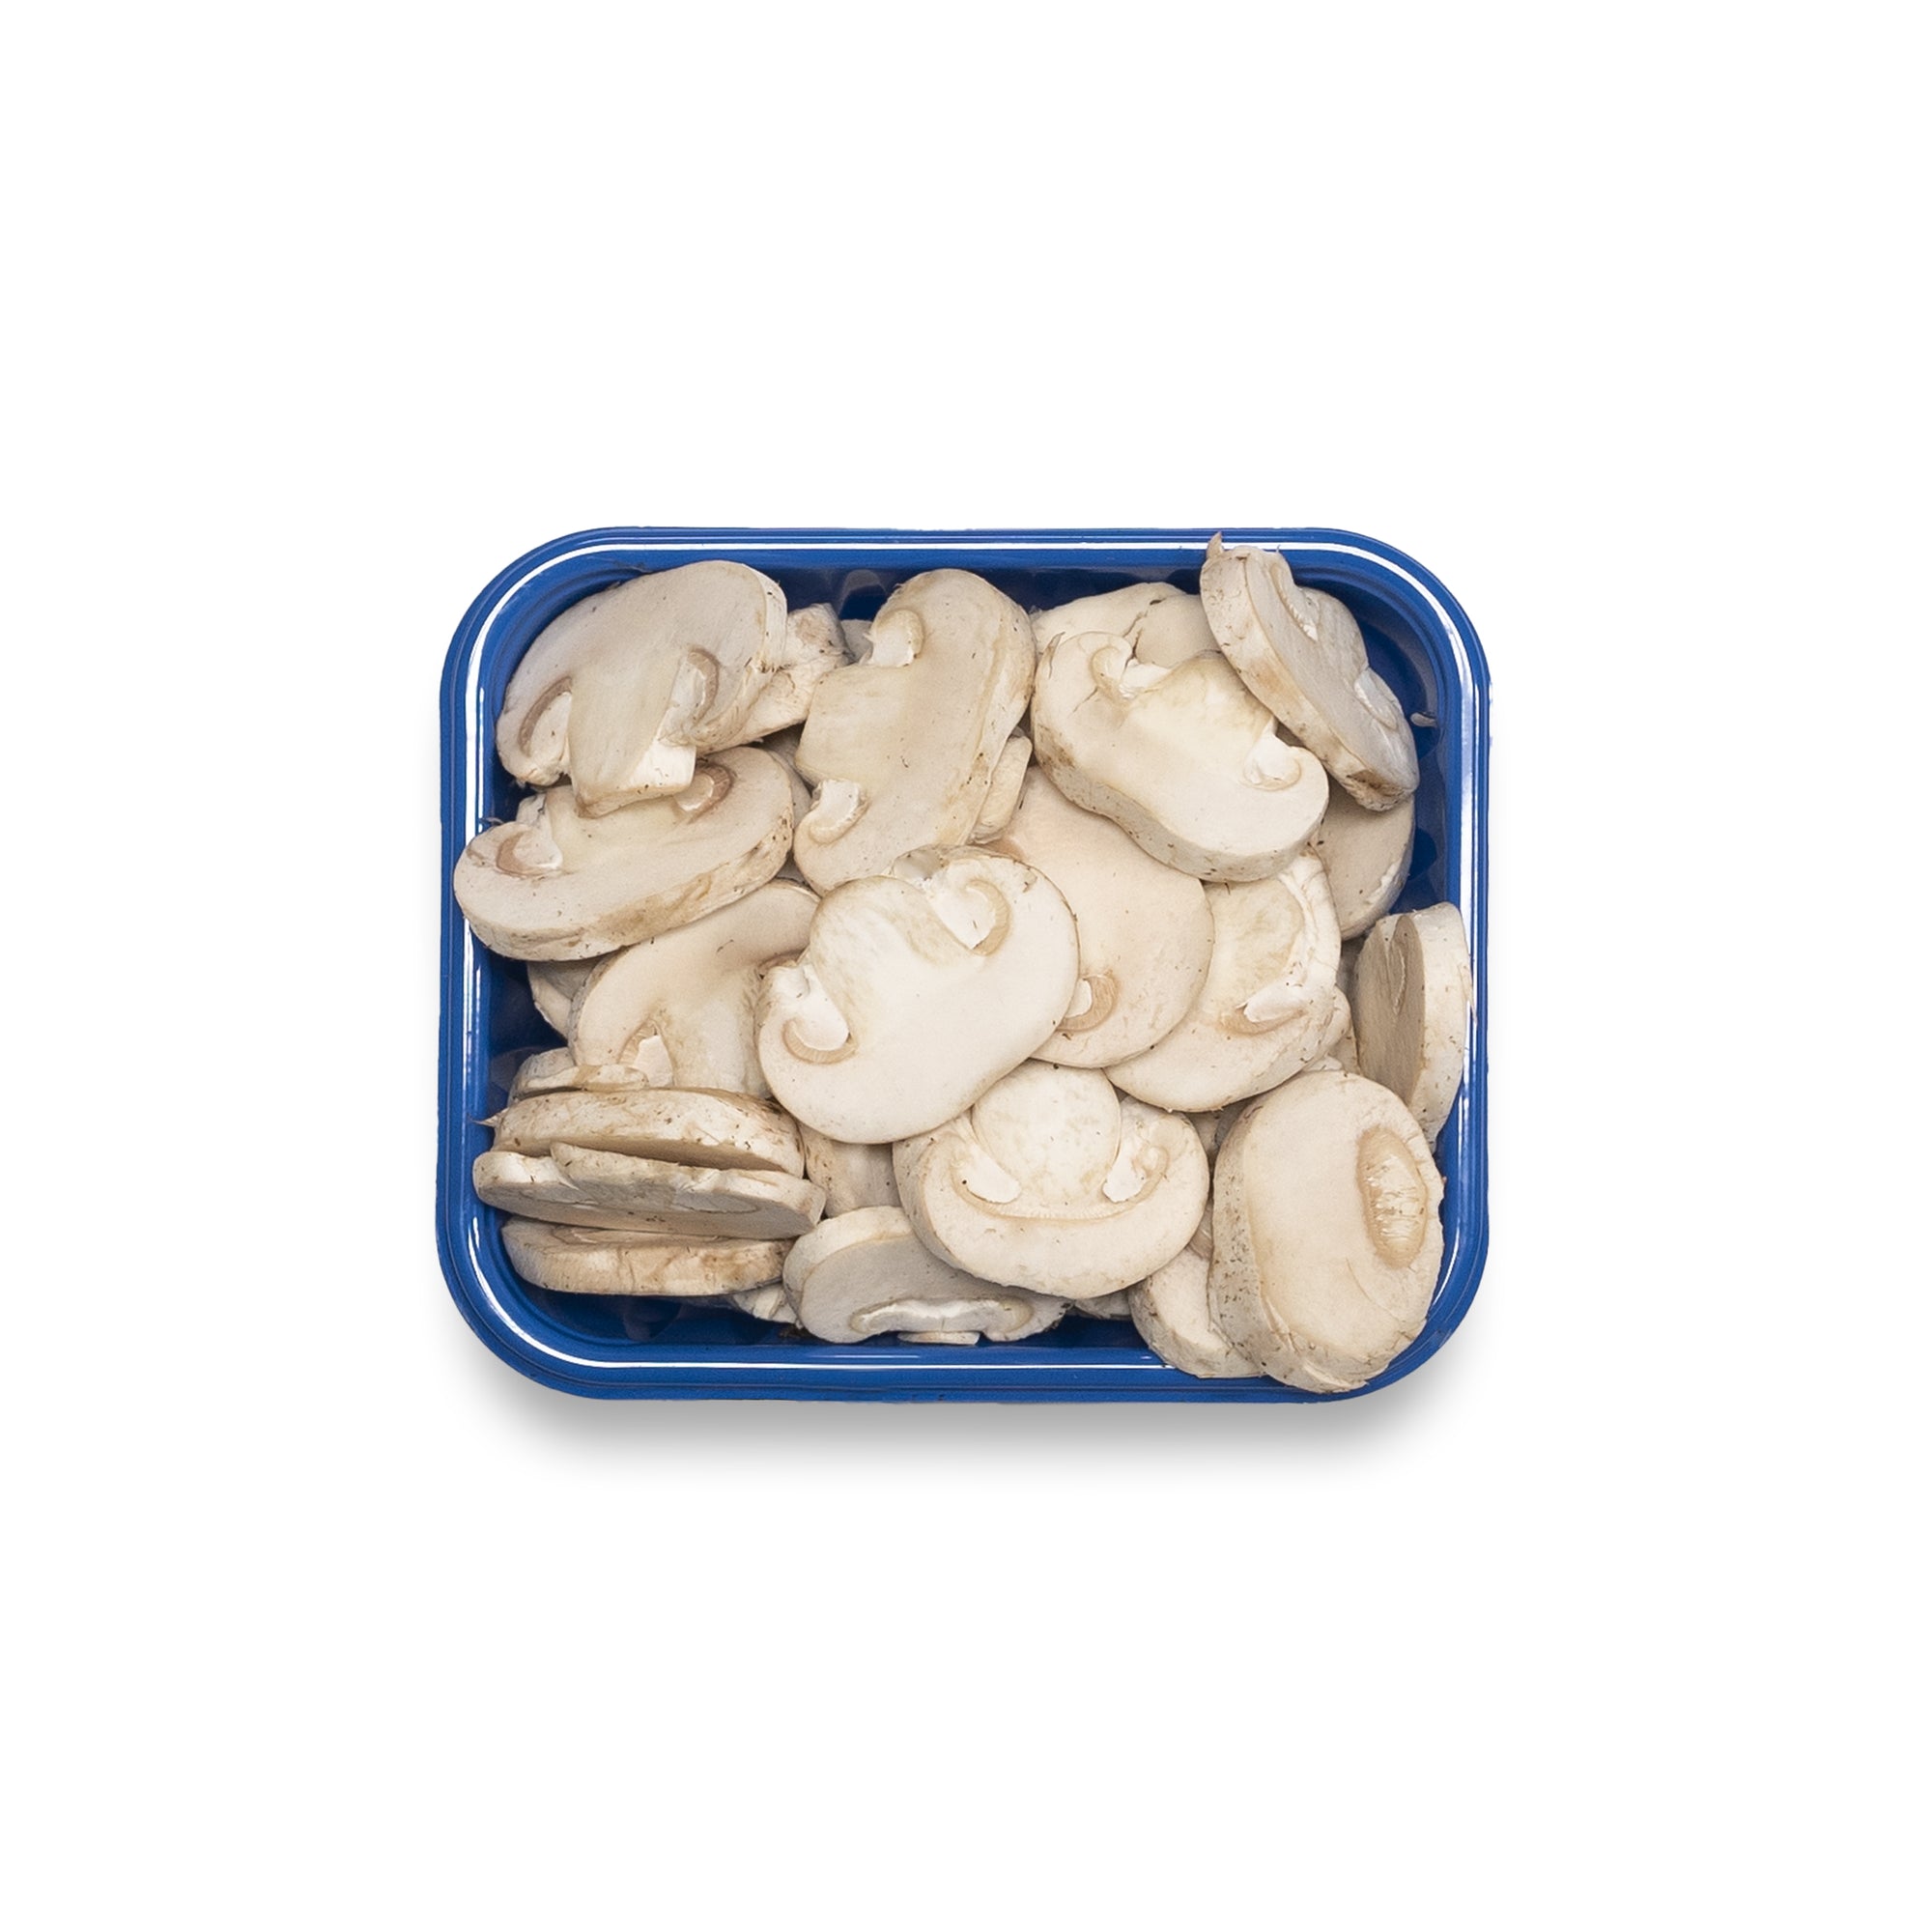 Mushrooms Sliced White 8 oz